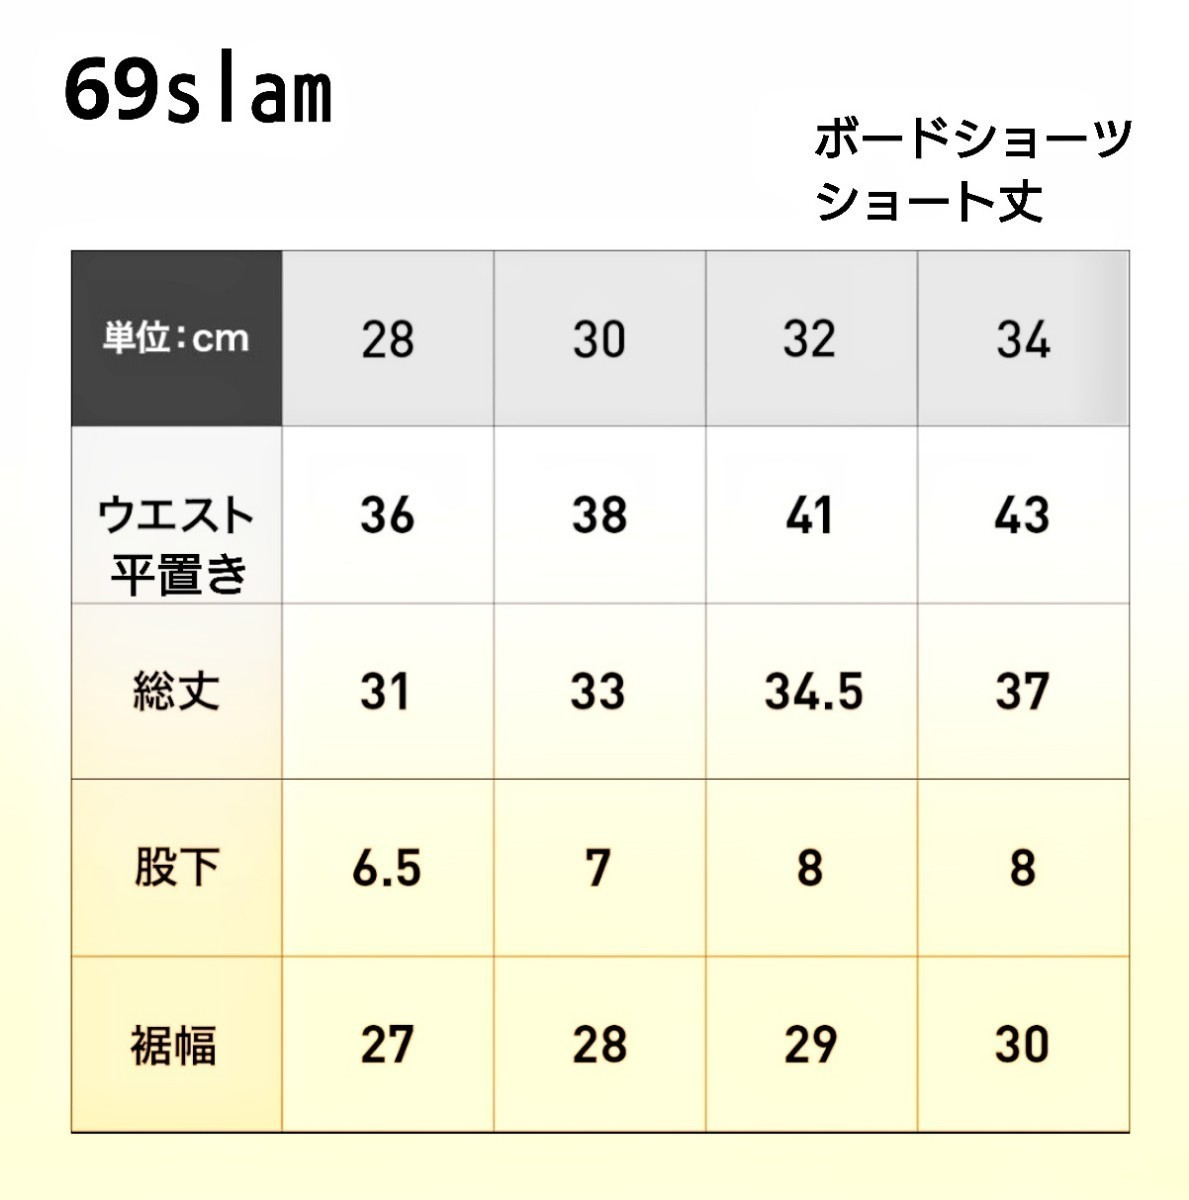 金子賢愛用 69slam ロックスラム サーフパンツ 水陸両用 ショート丈 ショートパンツ 海パン 34インチ